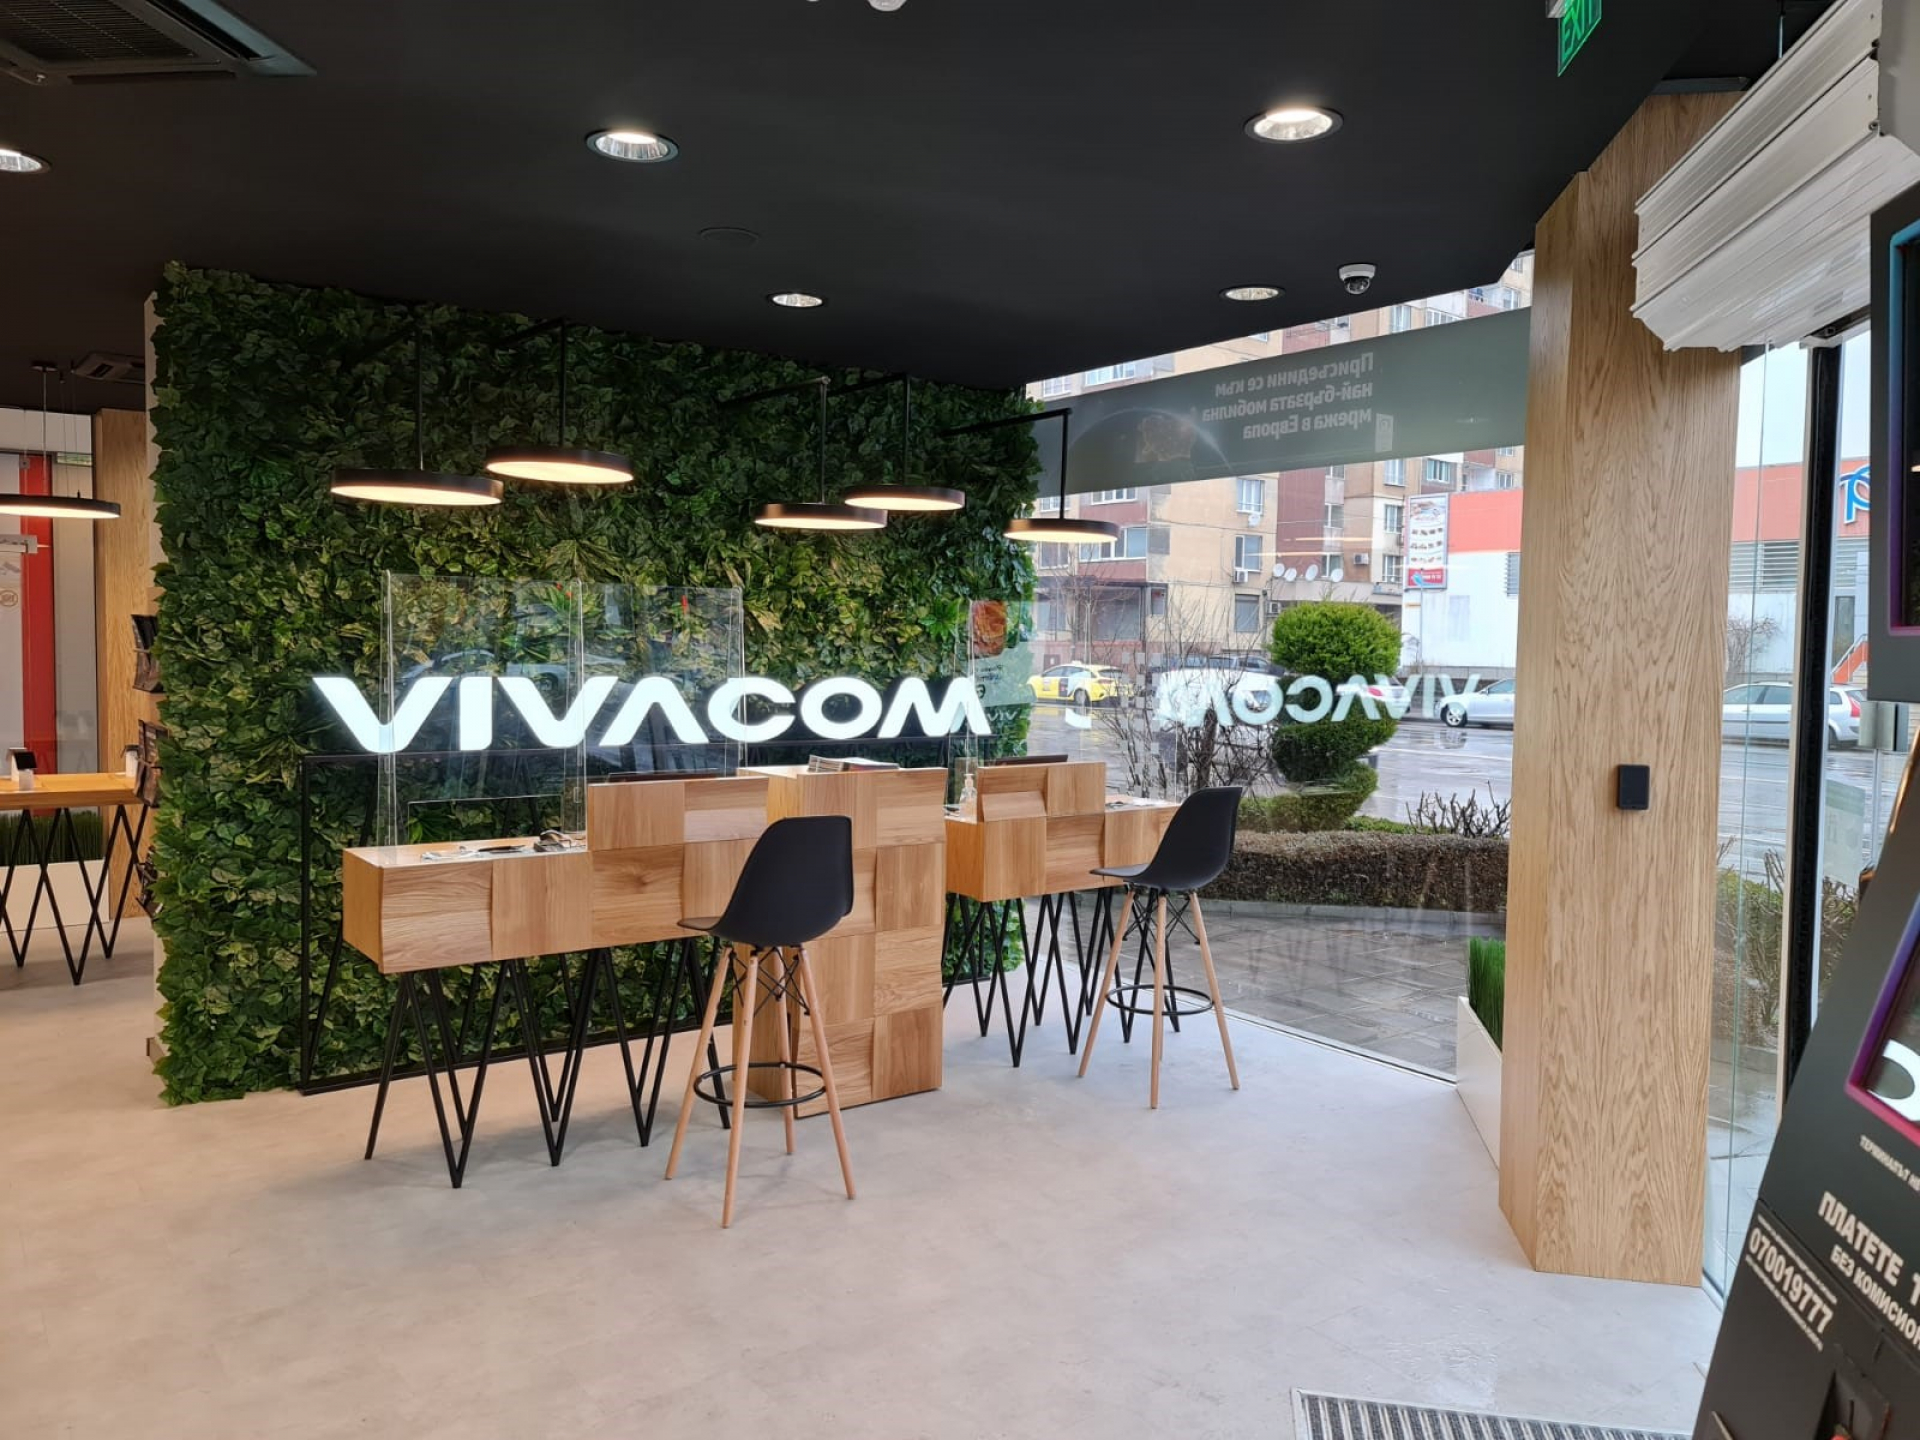 От днес може да вземете винетки 2023 онлайн и в търговската мрежа на Vivacom